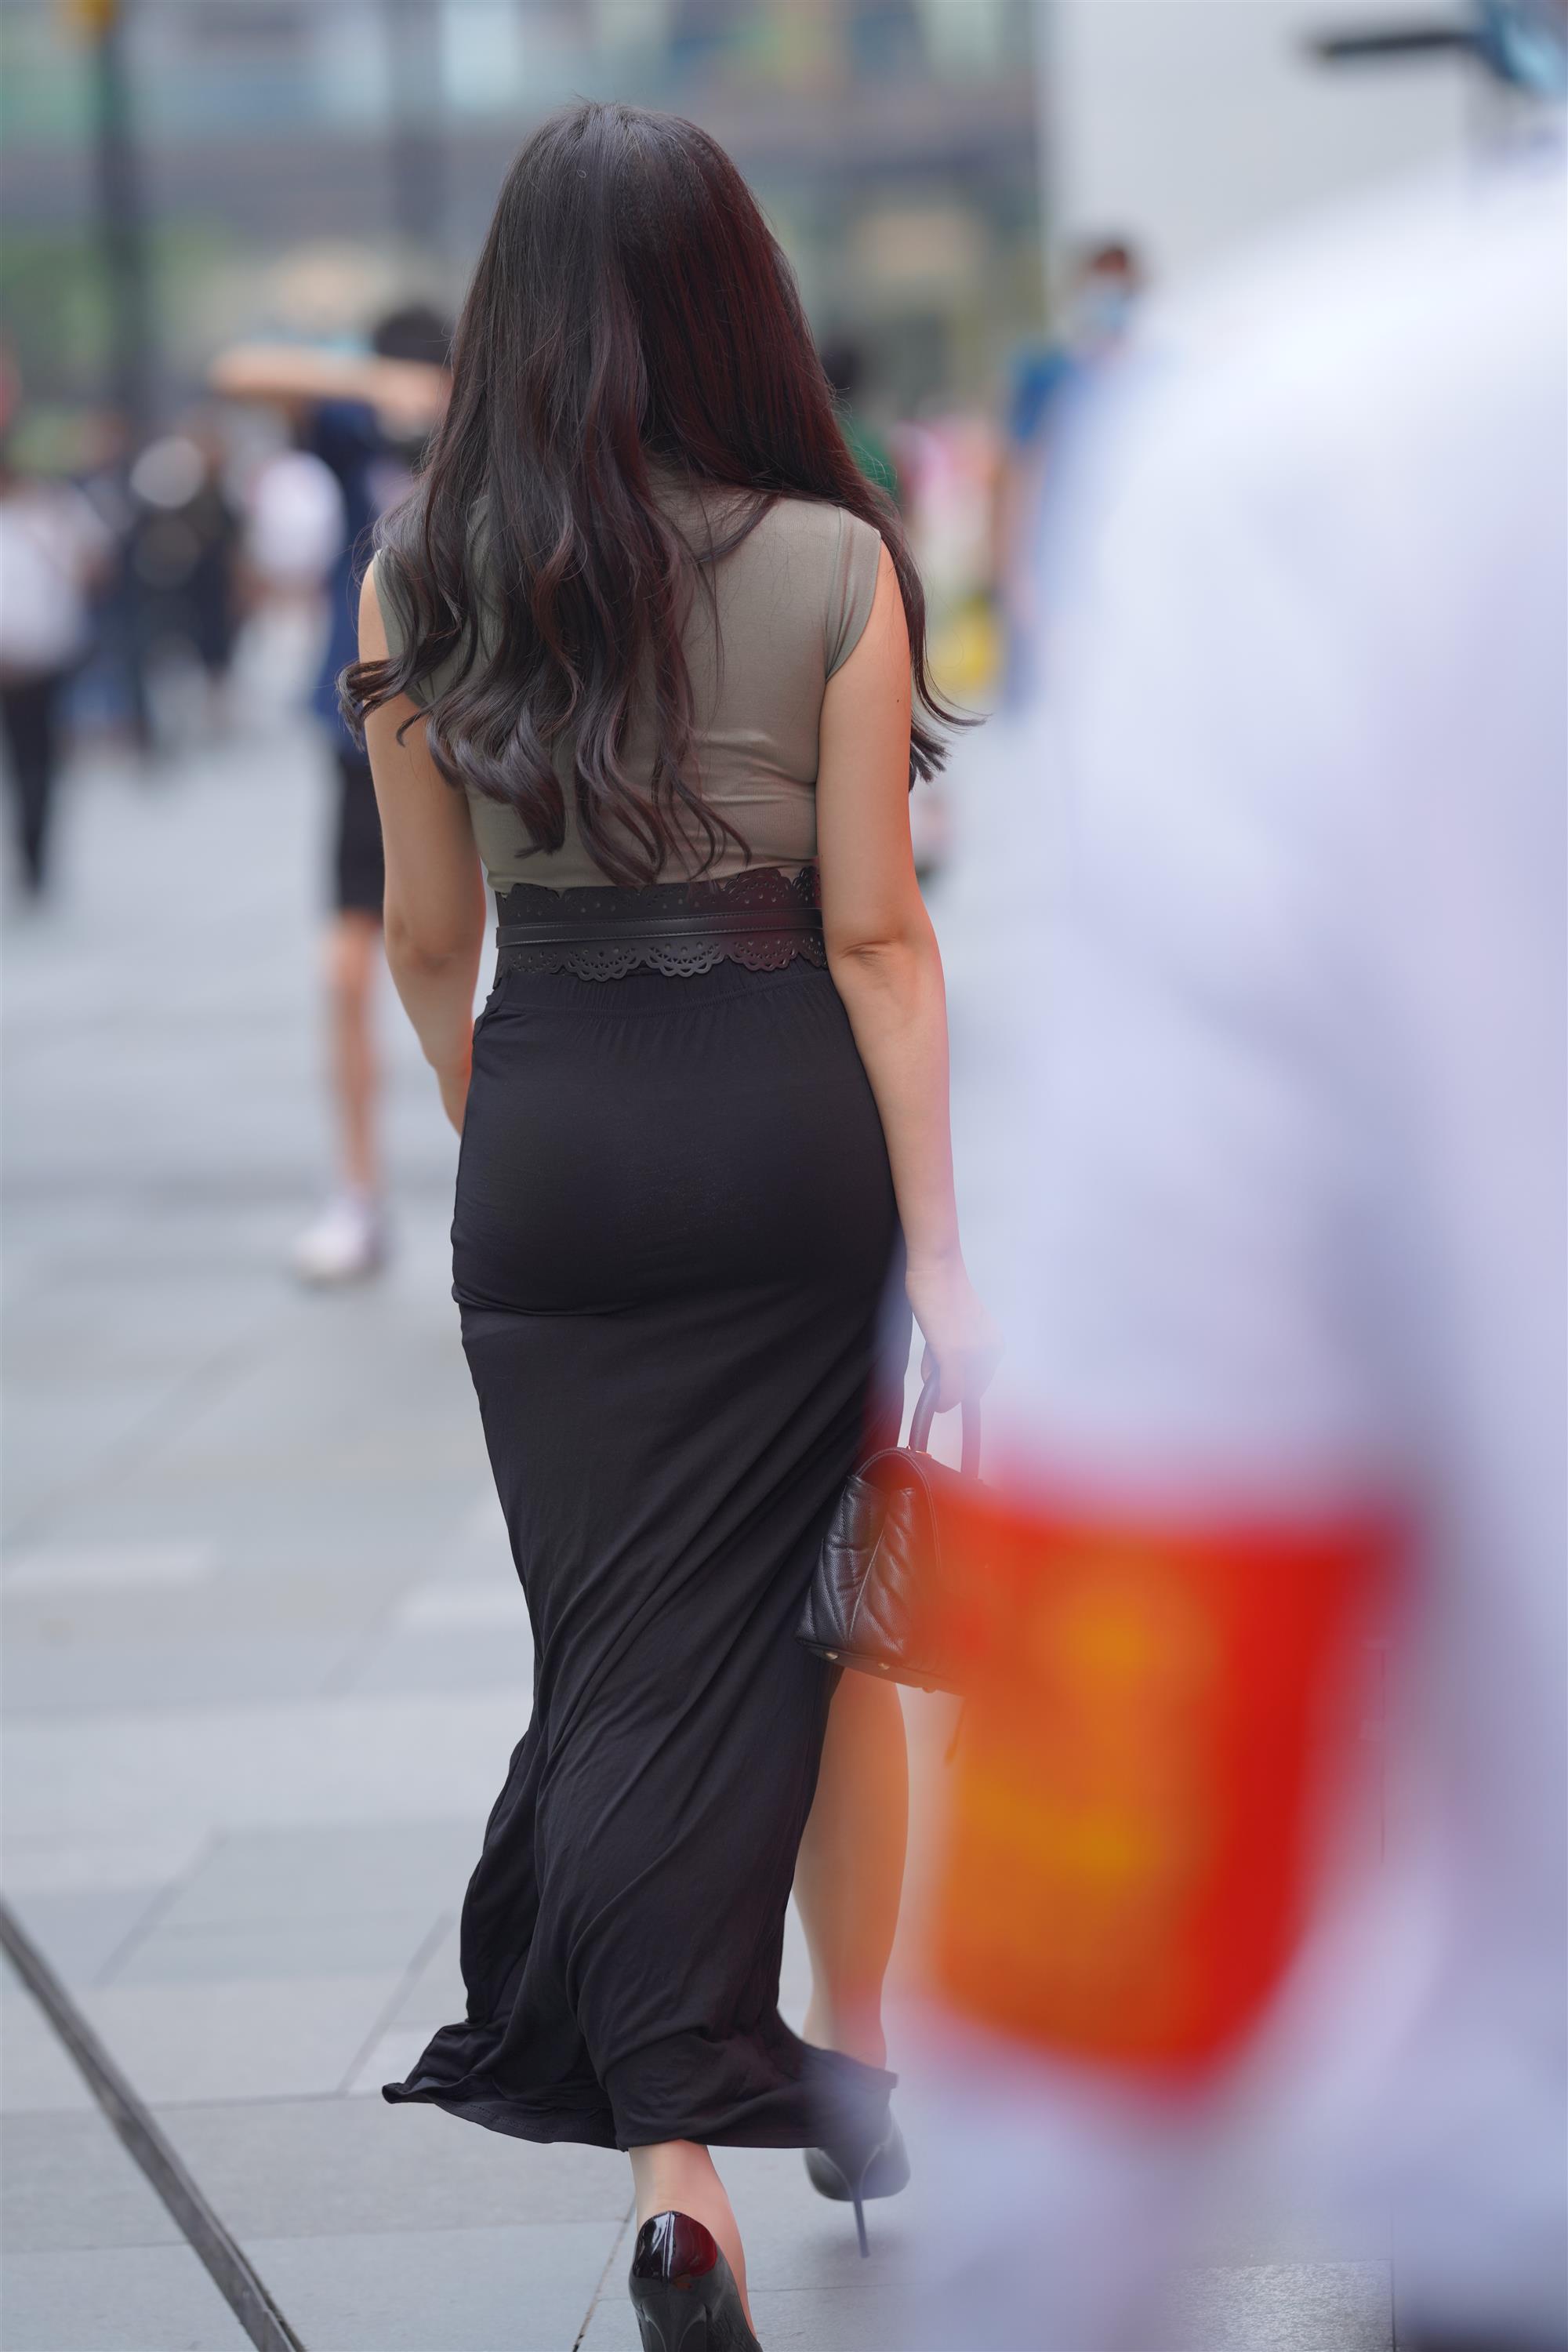 Street 欣儿 Long black skirt - 66.jpg